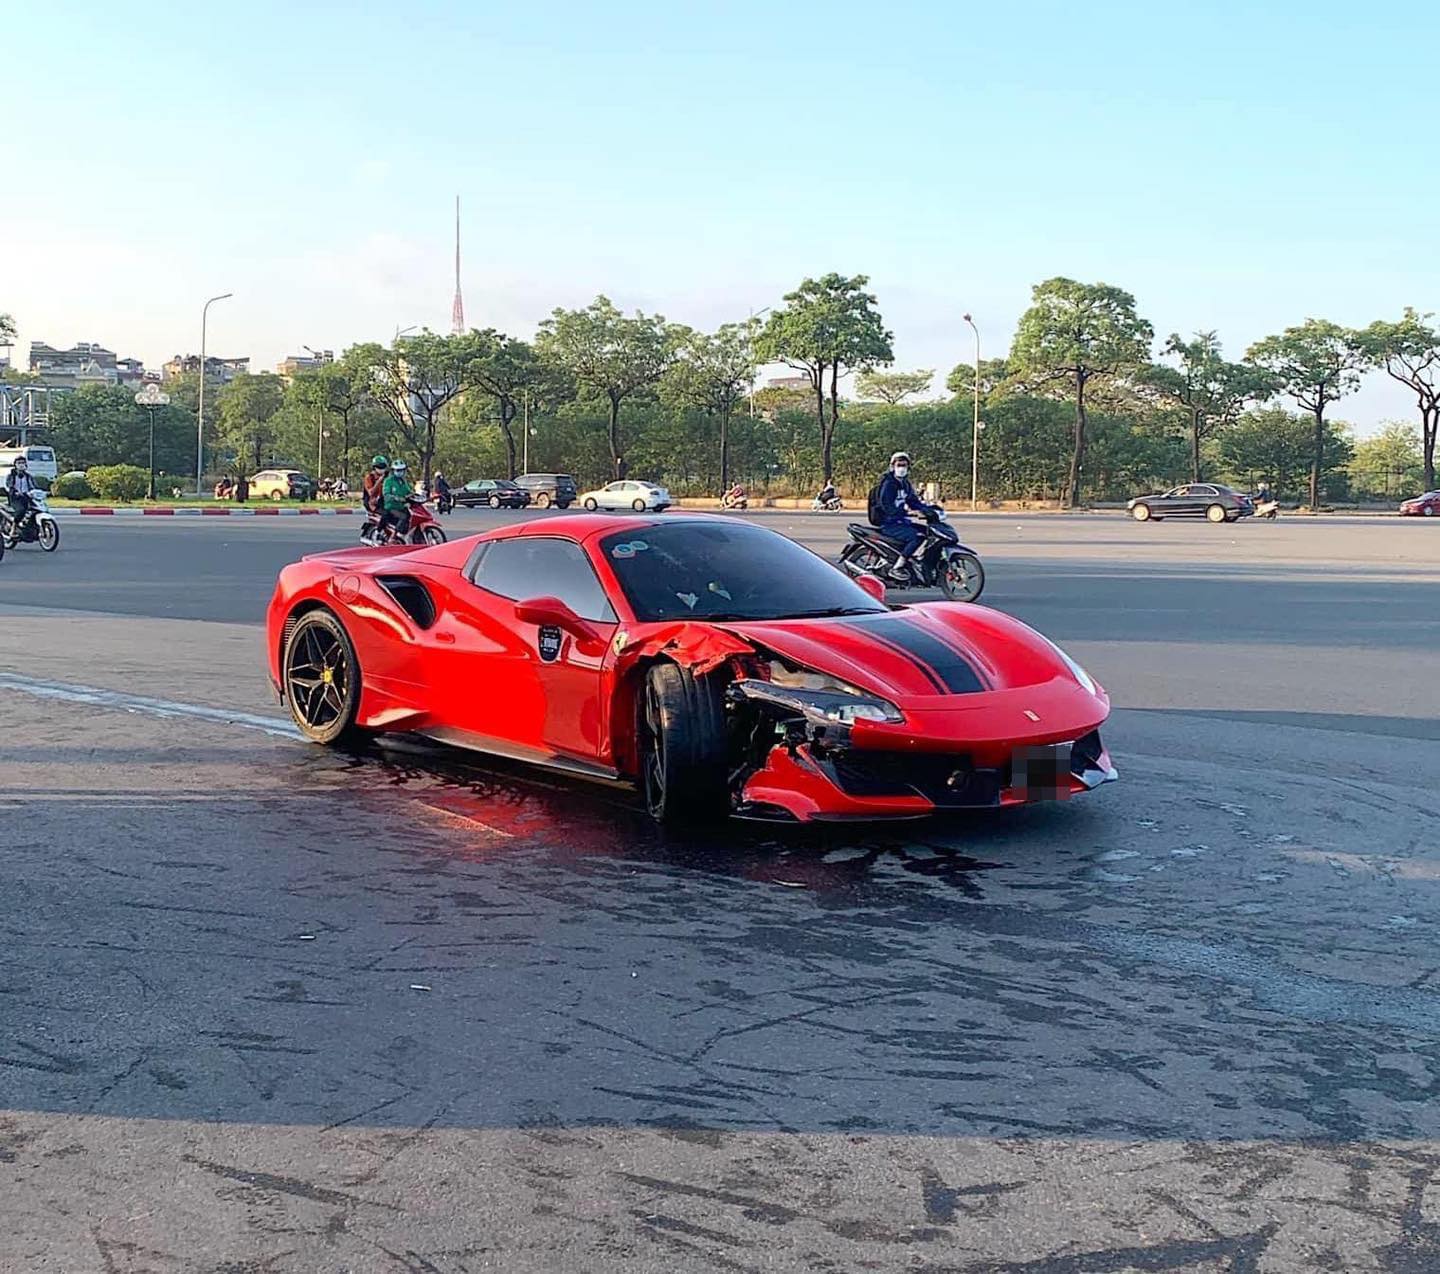 Siêu xe Ferrari gây tai nạn khiến 1 người đi xe máy tử vong tại Hà Nội - Ảnh 1.